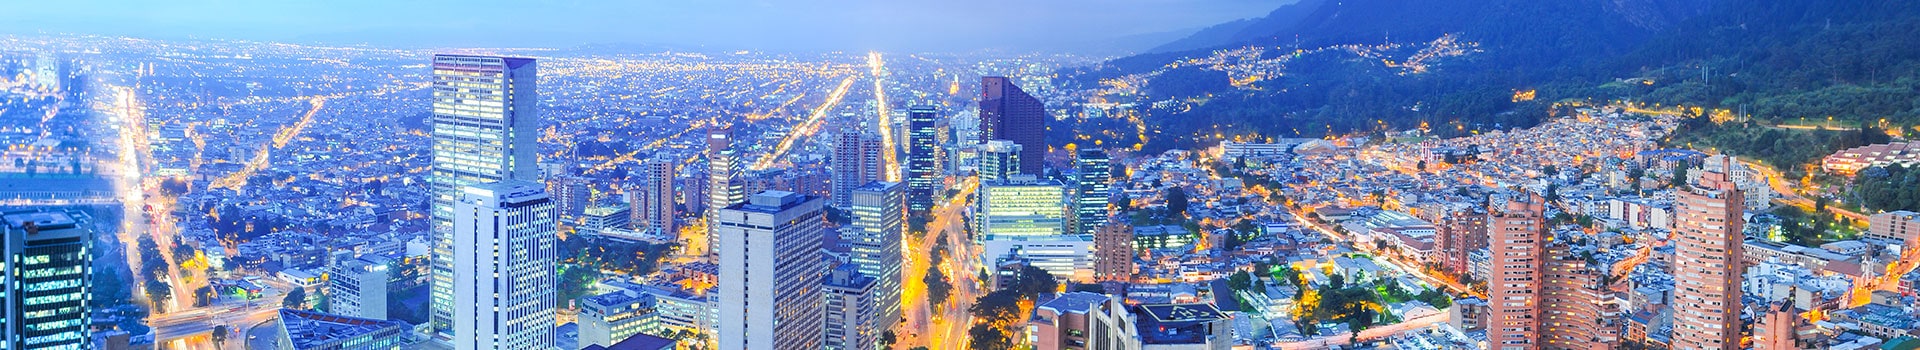 Cidade do panamá - Bogotá